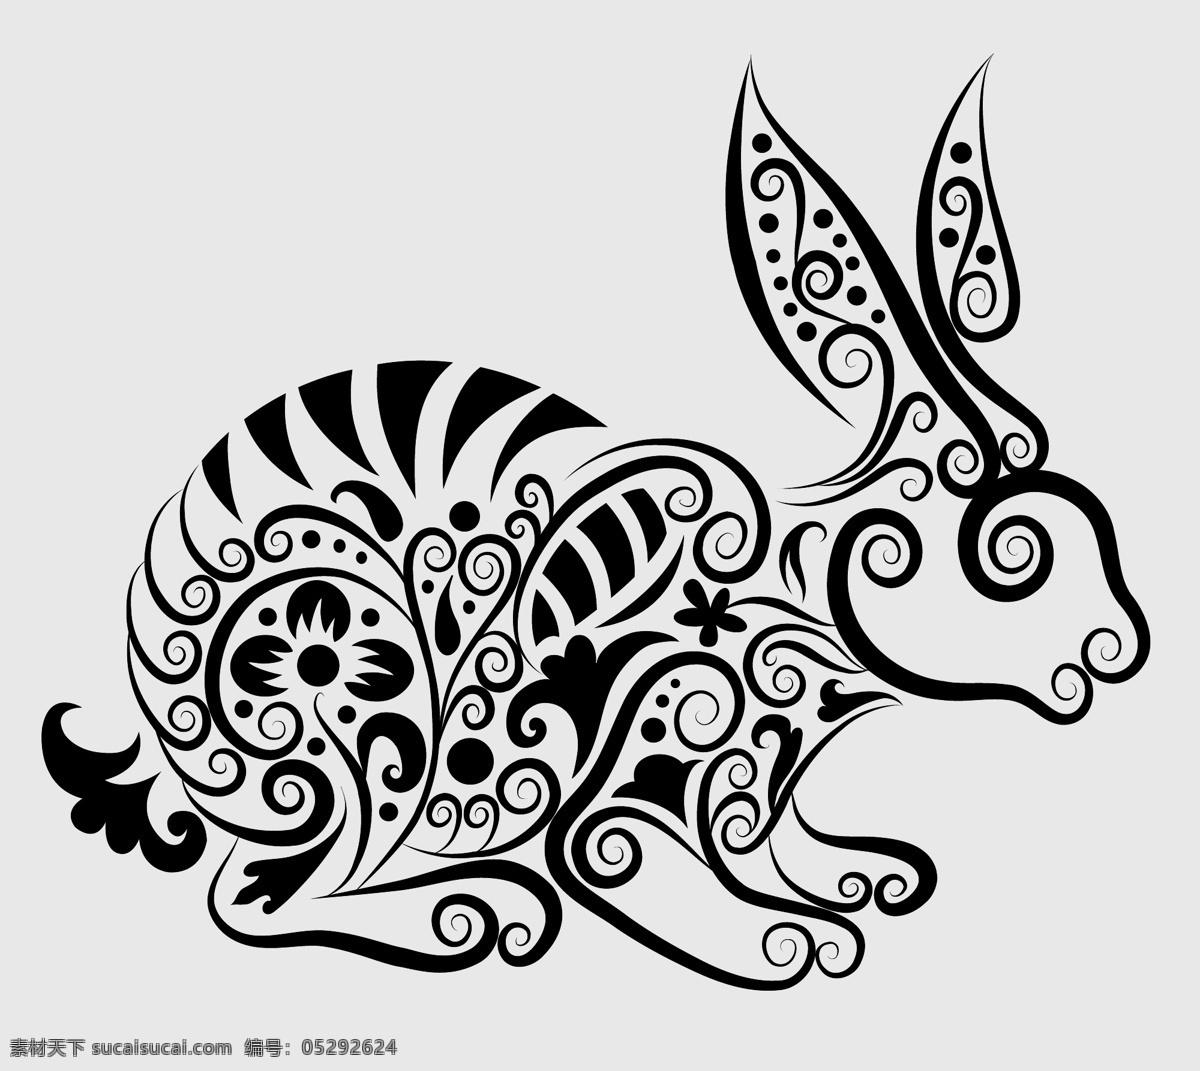 精美 花纹 兔子 矢量 刺青 动物 剪影 矢量素材 手绘 图案 图形 纹身 线稿 线条 矢量图 其他矢量图